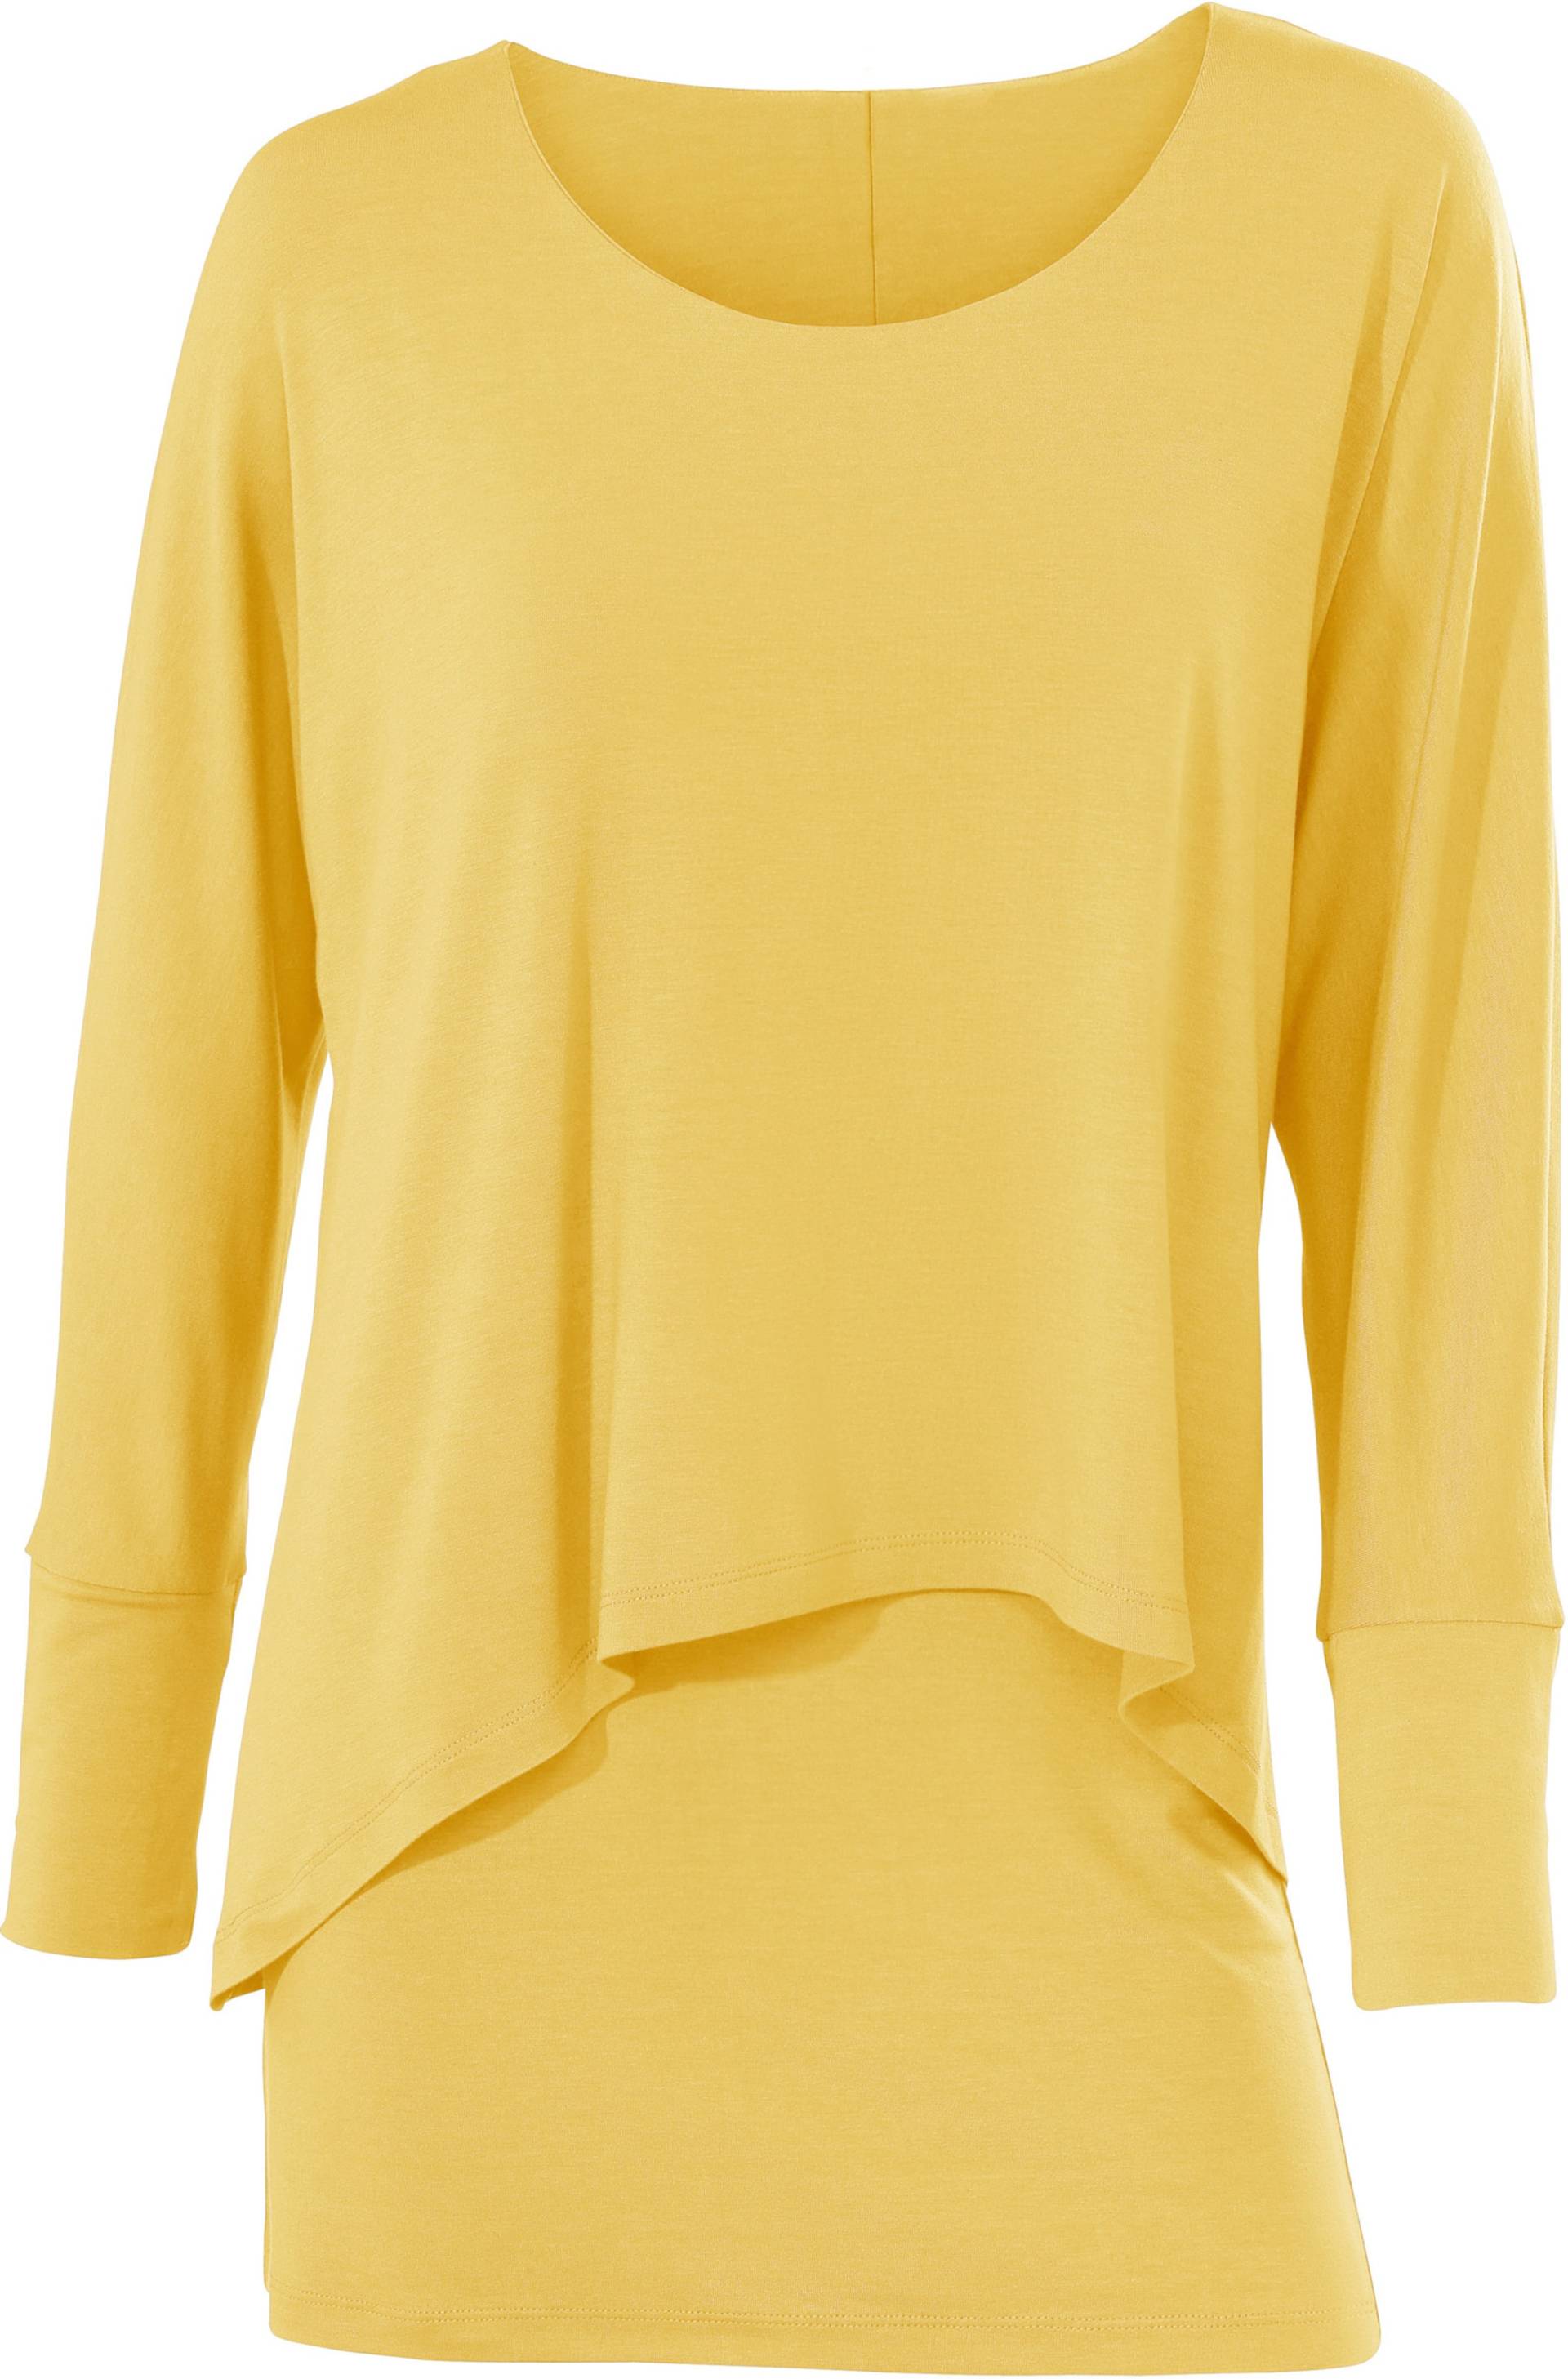 Rundhals-Shirt in gelb von heine